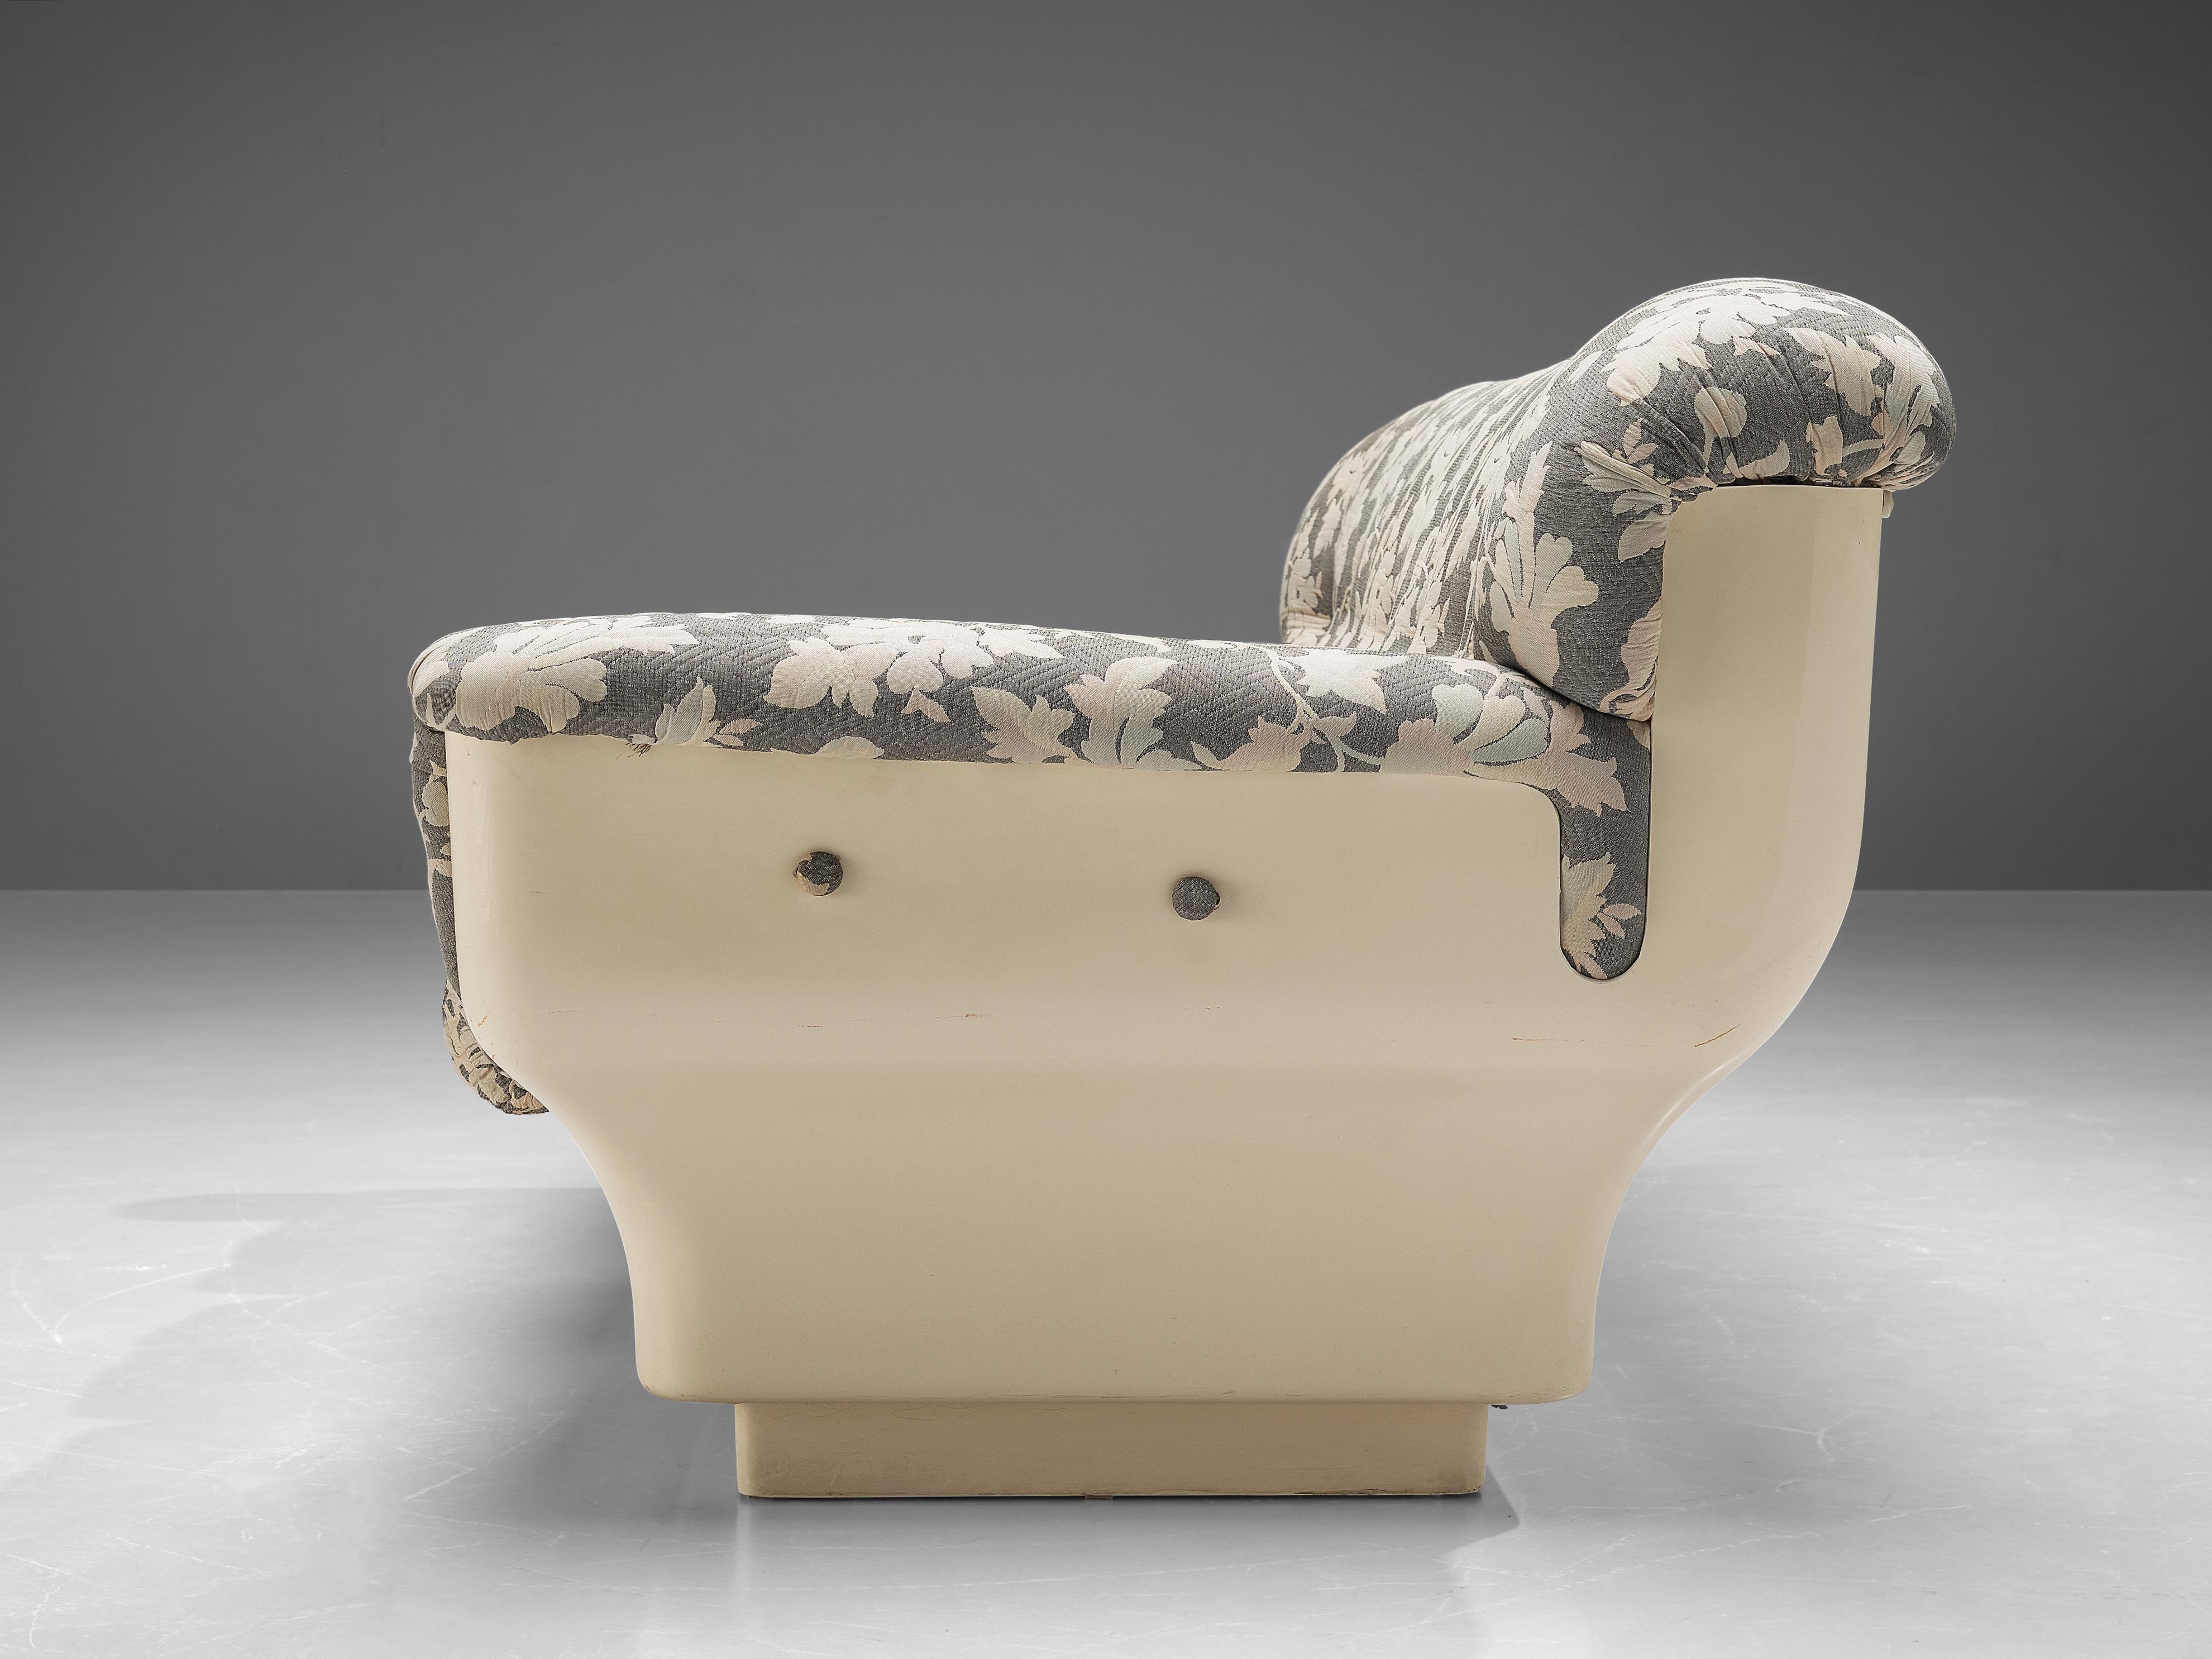 Italian Studio Tecnico for Mobilquattro ‘Delta 699’ Sofa in Floral Upholstery For Sale